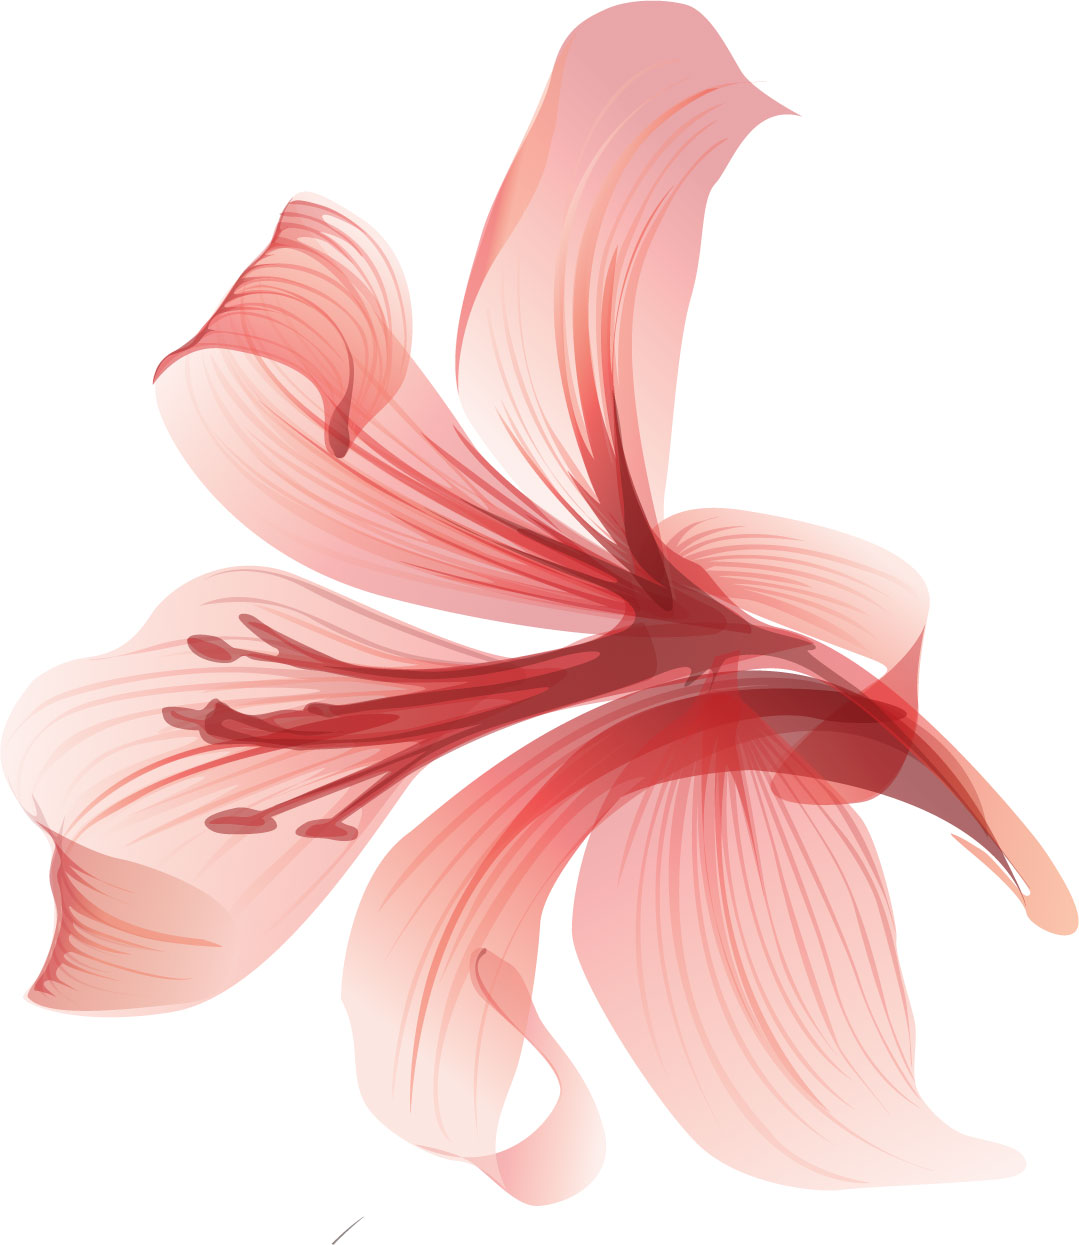 百合 ゆり の花の画像 イラスト フリー素材 No 021 ピンク おしべ 一輪